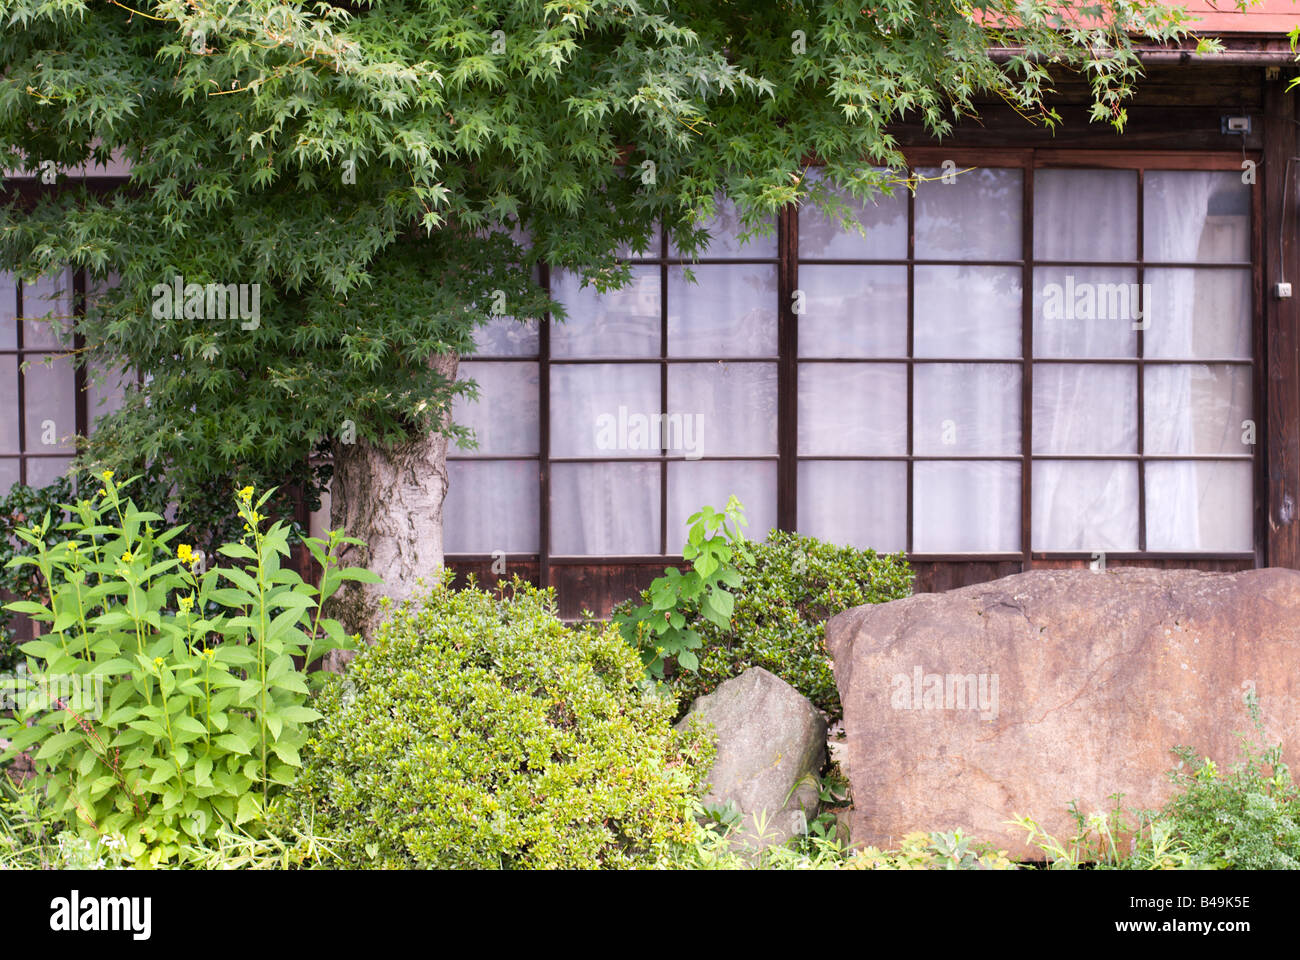 Detail von einem typischen japanischen Haus - Fenster und Garten - Shimosuwa, Nagano, Japan. Stockfoto